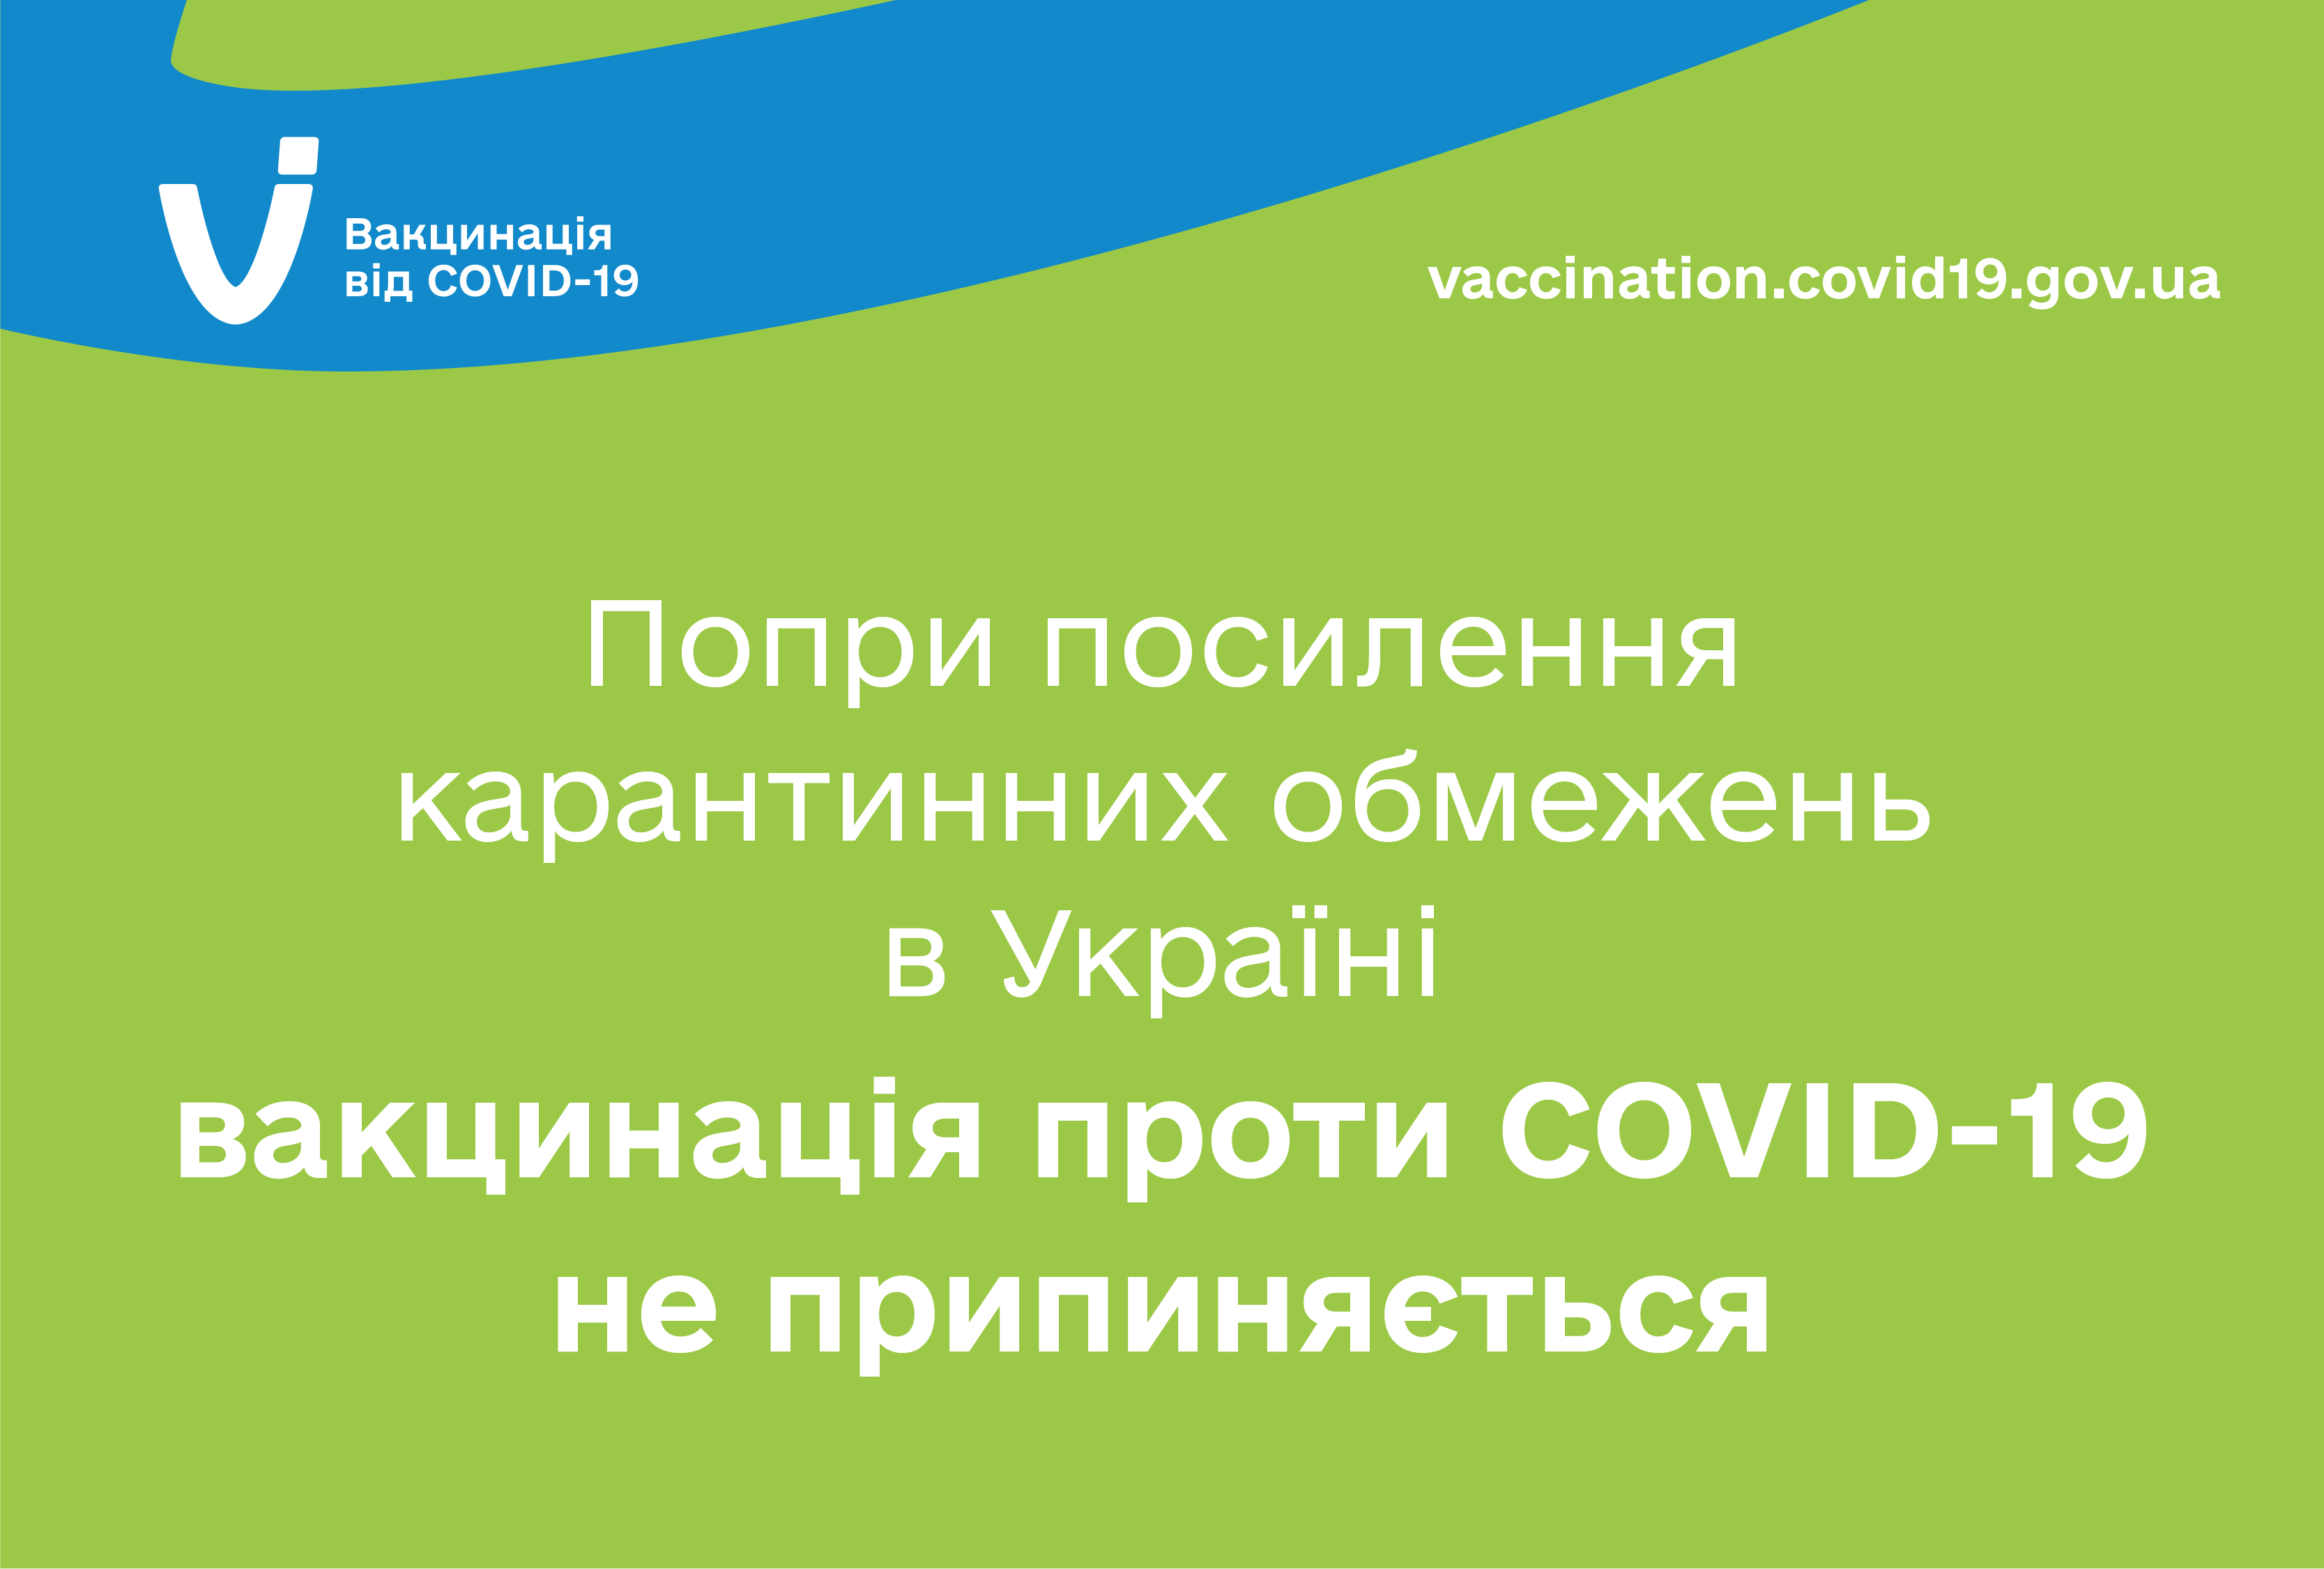 Несмотря на усиление карантинных ограничений в некоторых областях Украины вакцинация против COVID-19 не прекращается